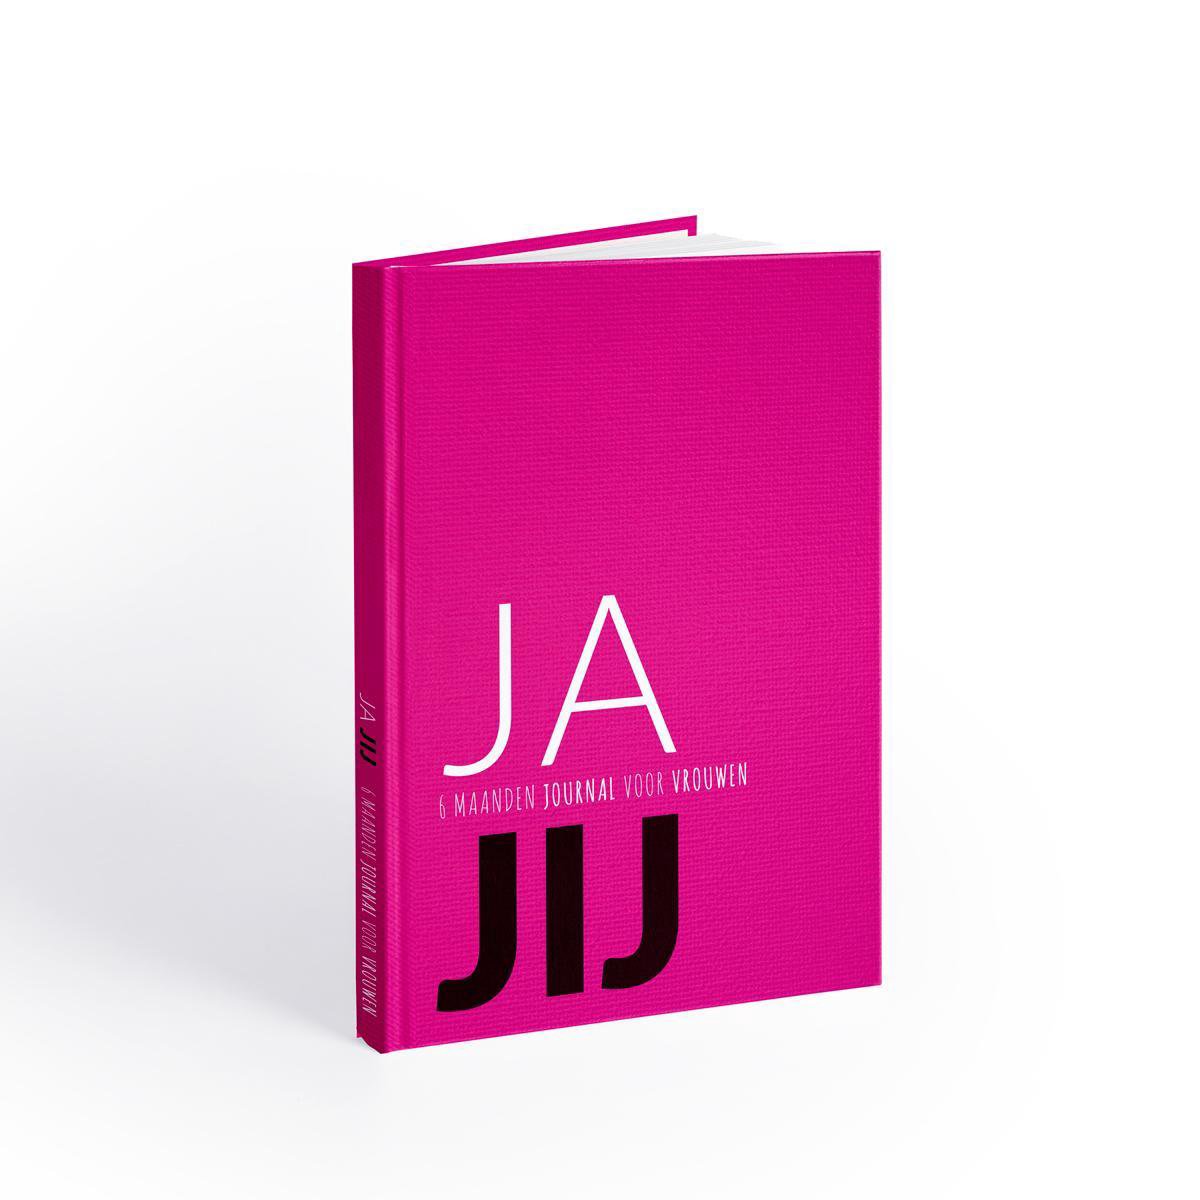 JA JIJ Journal - Invuldagboek/Journals - 6 maanden invuldagboek voor vrouwen - zelfontwikkeling & doelen stellen - Nina van Arum